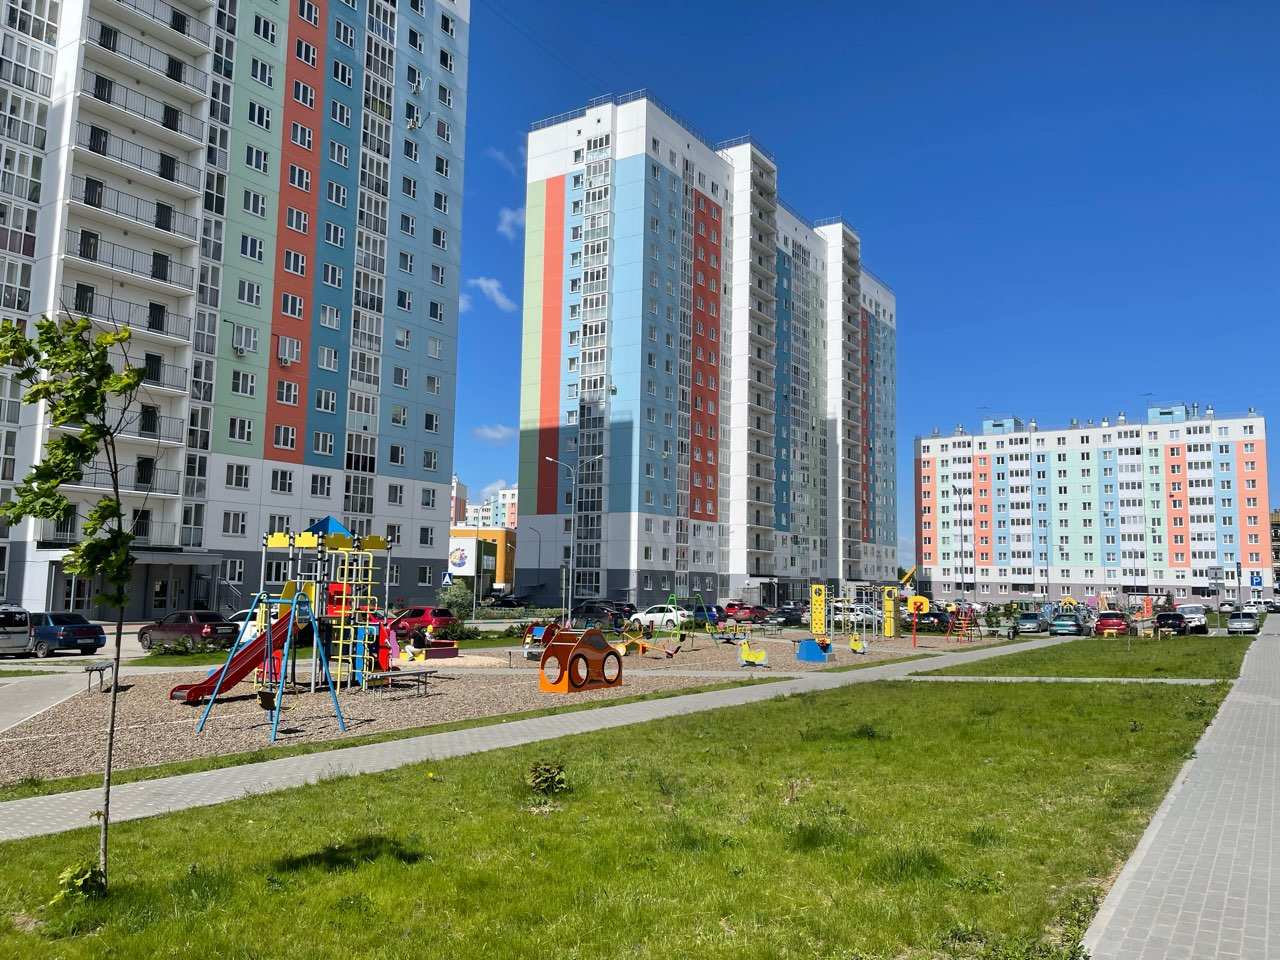 Более 675 тысяч кв. метров жилья ввели в эксплуатацию в Нижегородской области  - фото 1